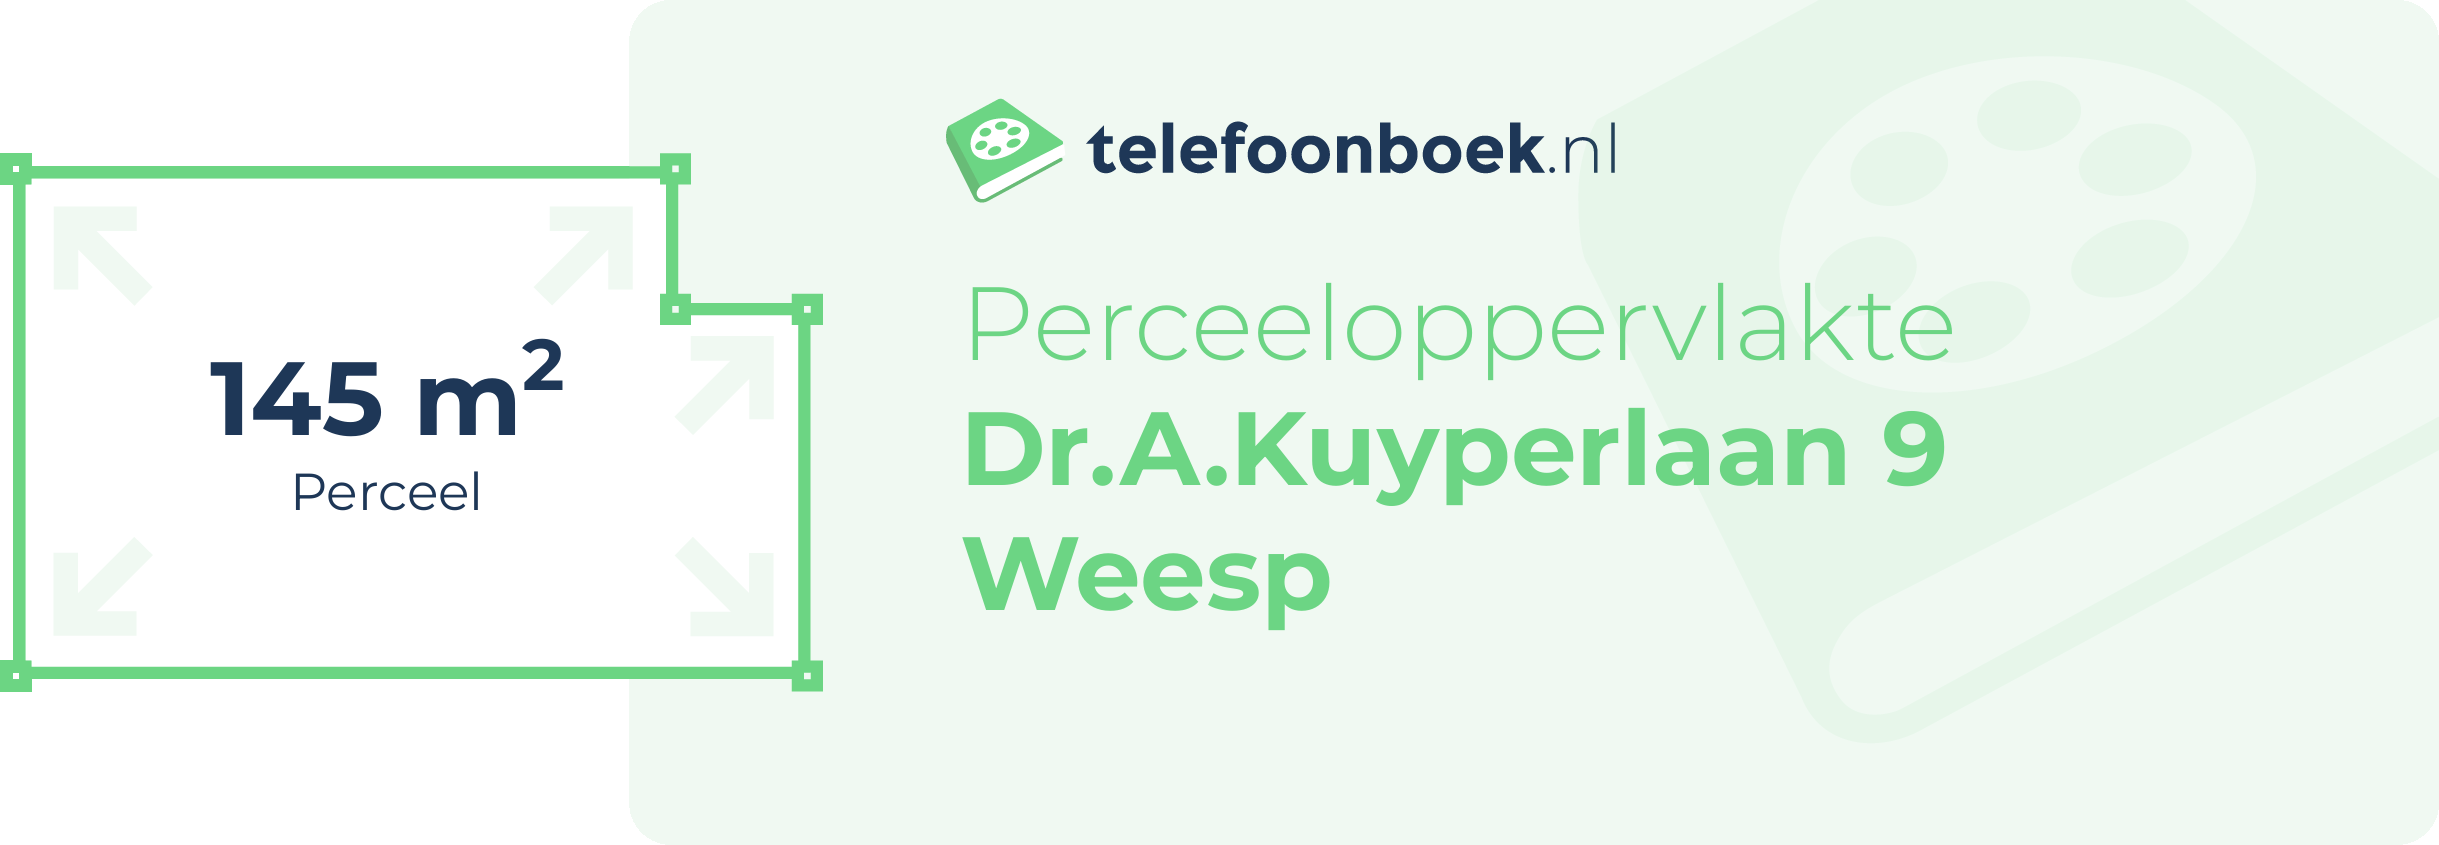 Perceeloppervlakte Dr.A.Kuyperlaan 9 Weesp